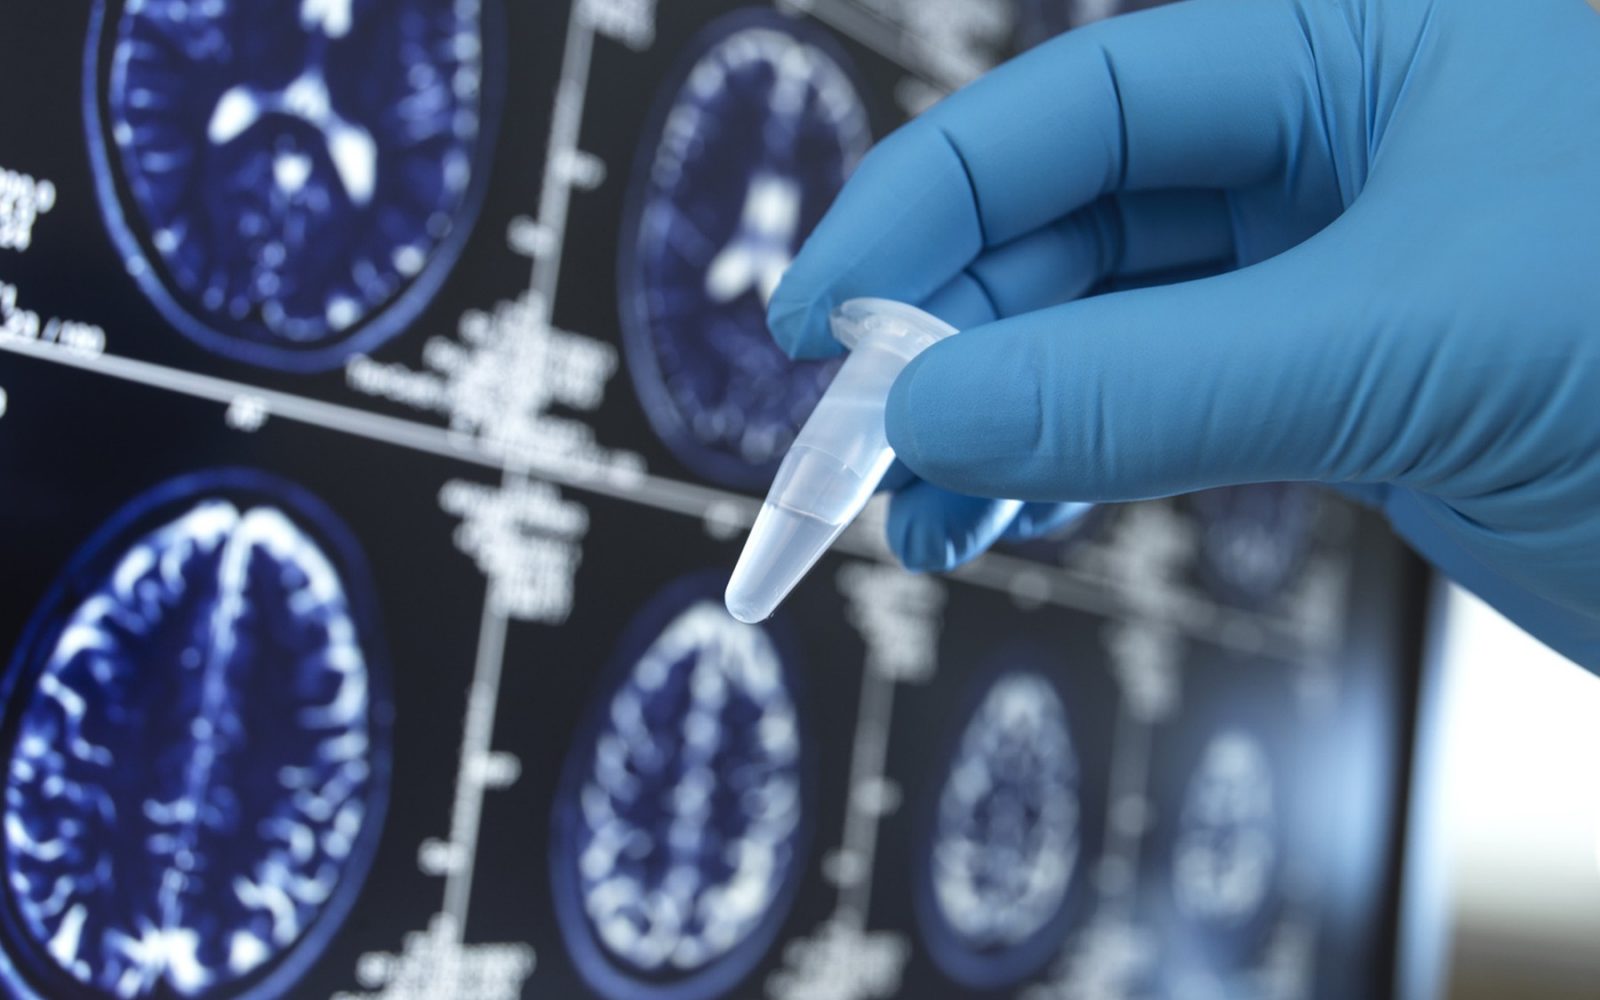 Fotografija prikazuje roko v modrih medicinskih rokavicah, ki drži majhno plastično epruveto. V ozadju so na zaslonu prikazane slike možganov, verjetno MRI posnetki, ki so uporabljeni za medicinsko analizo. Slike možganov imajo oznake in meritve, kar kaže na uporabo tehničnih in diagnostičnih postopkov za pregledovanje možganske aktivnosti ali strukture.